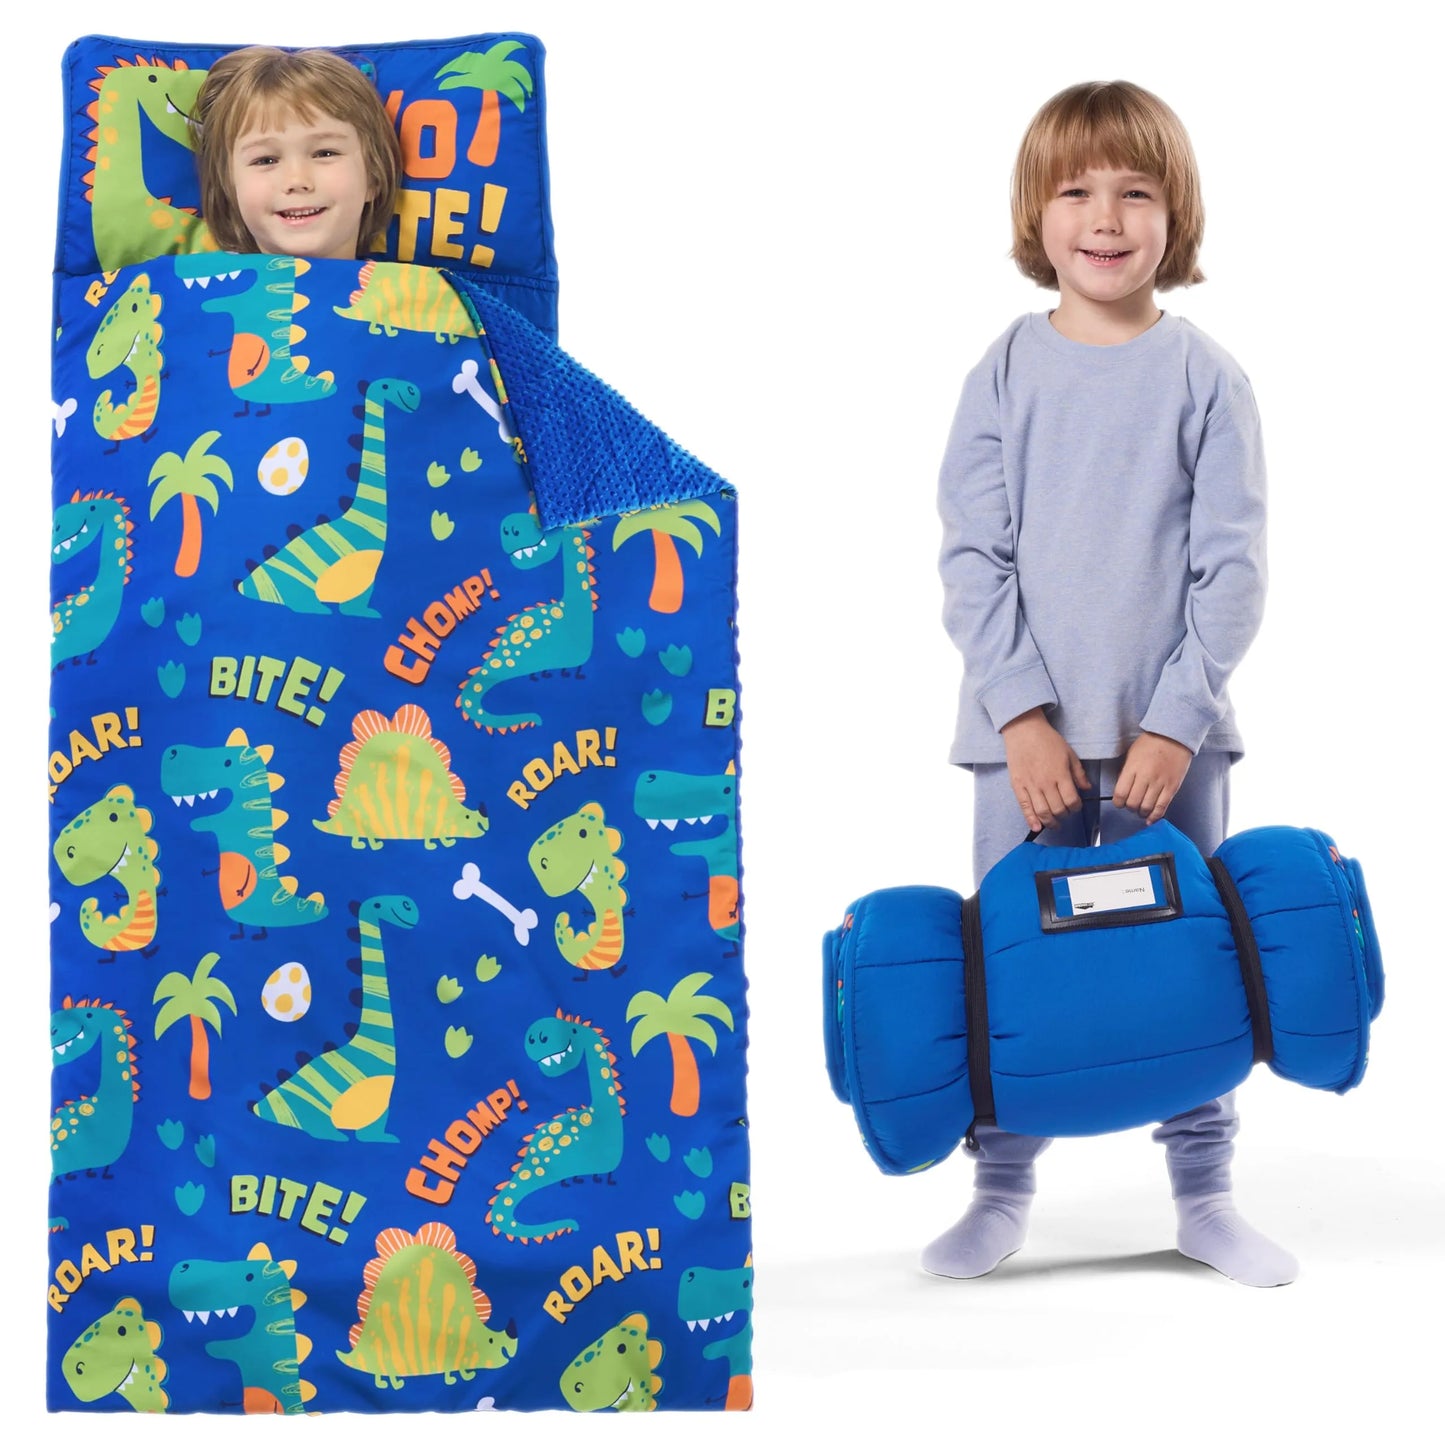 Toddler Nap Mat with Pillow & Blanket 鈥?Roll Up Nap Mat for Preschool- Soft Kids Sleeping Mat